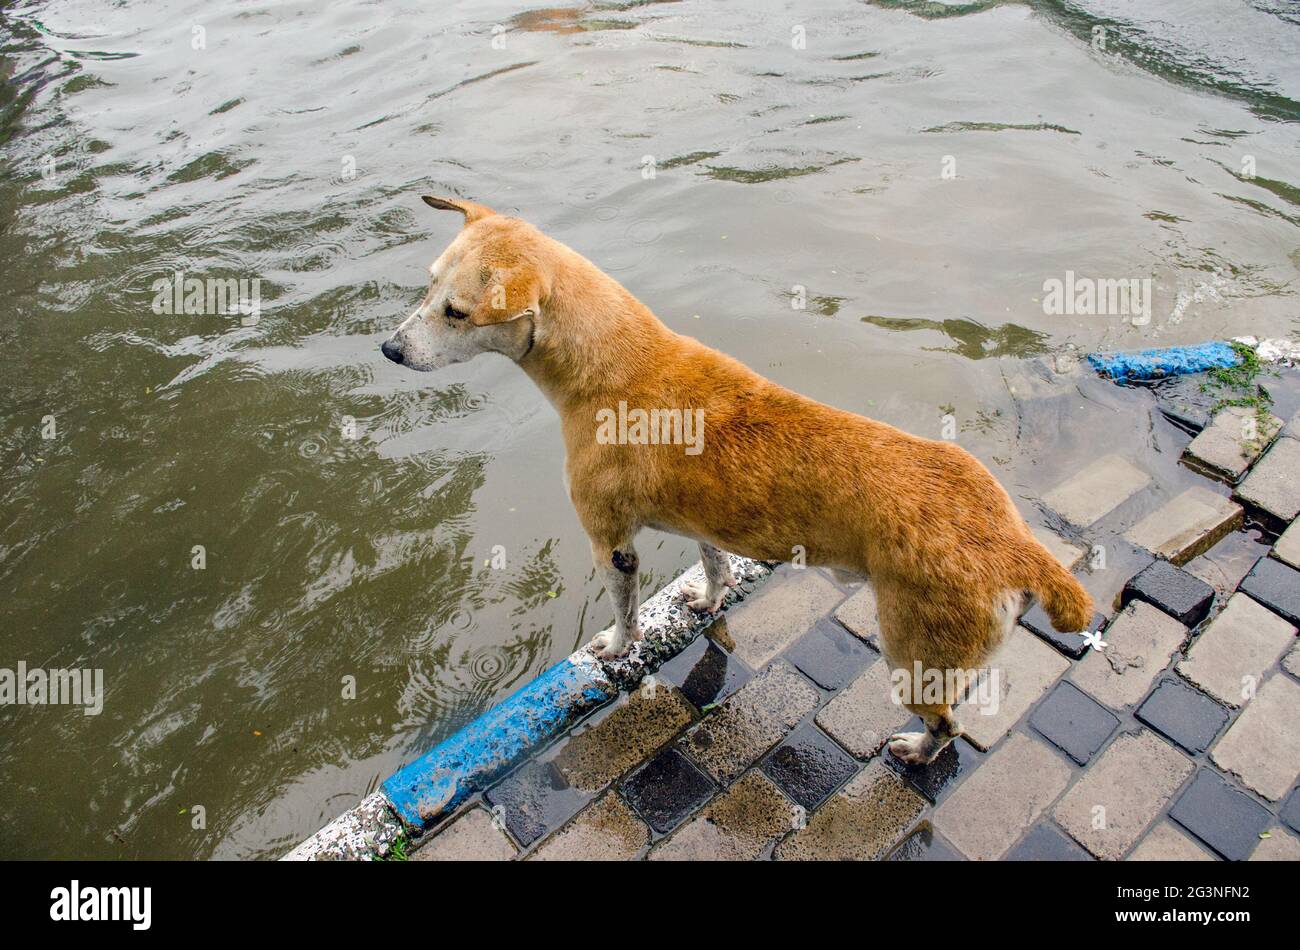 via di accesso all'acqua di kolkata. Un cane si trova sul sentiero e aspetta di attraversare la strada. Foto Stock